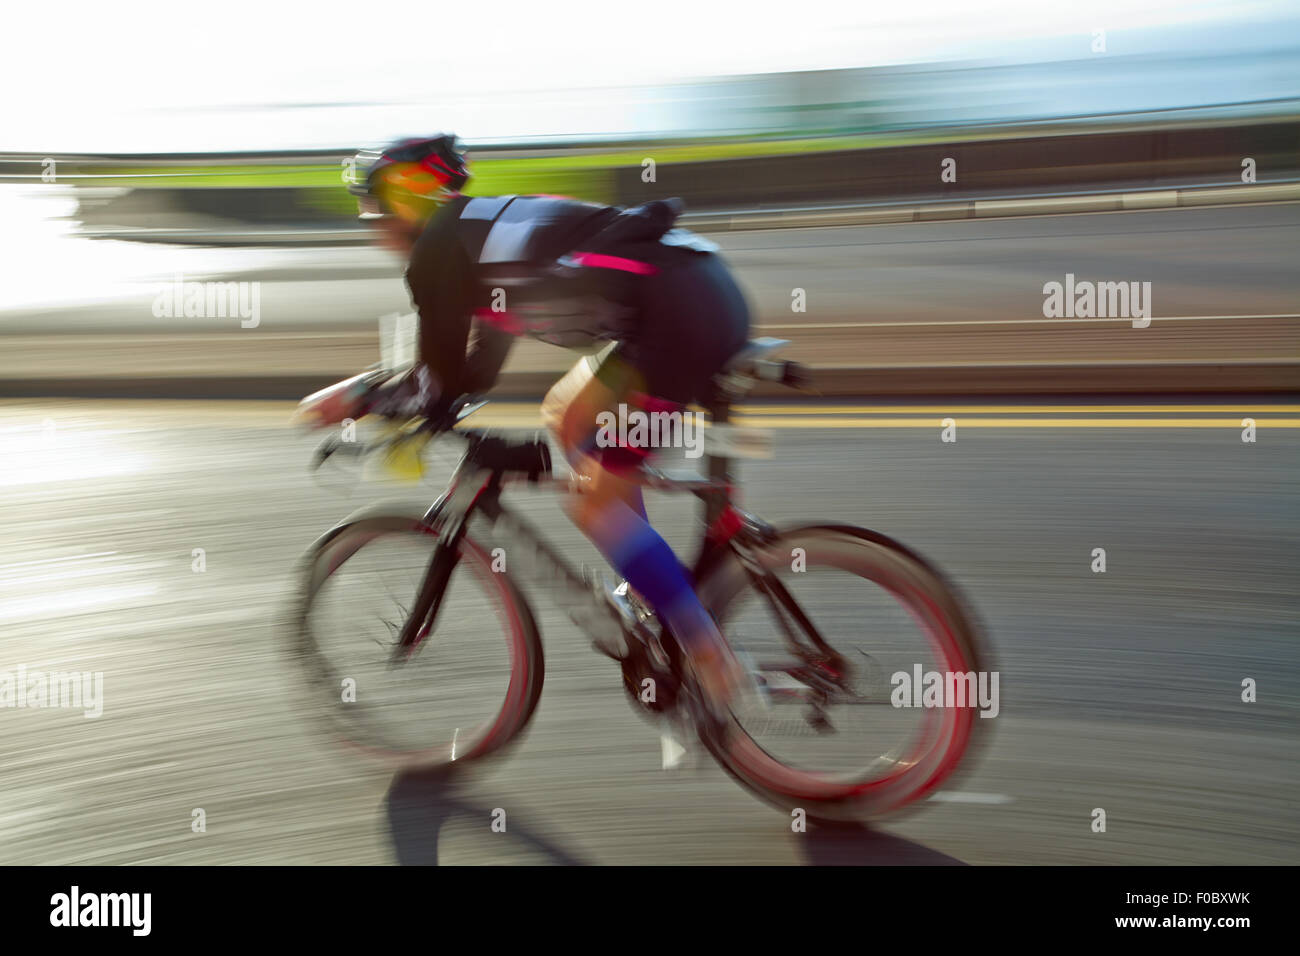 Équitation athlète vélo à journée ensoleillée sur la route côtière, blurred motion Banque D'Images